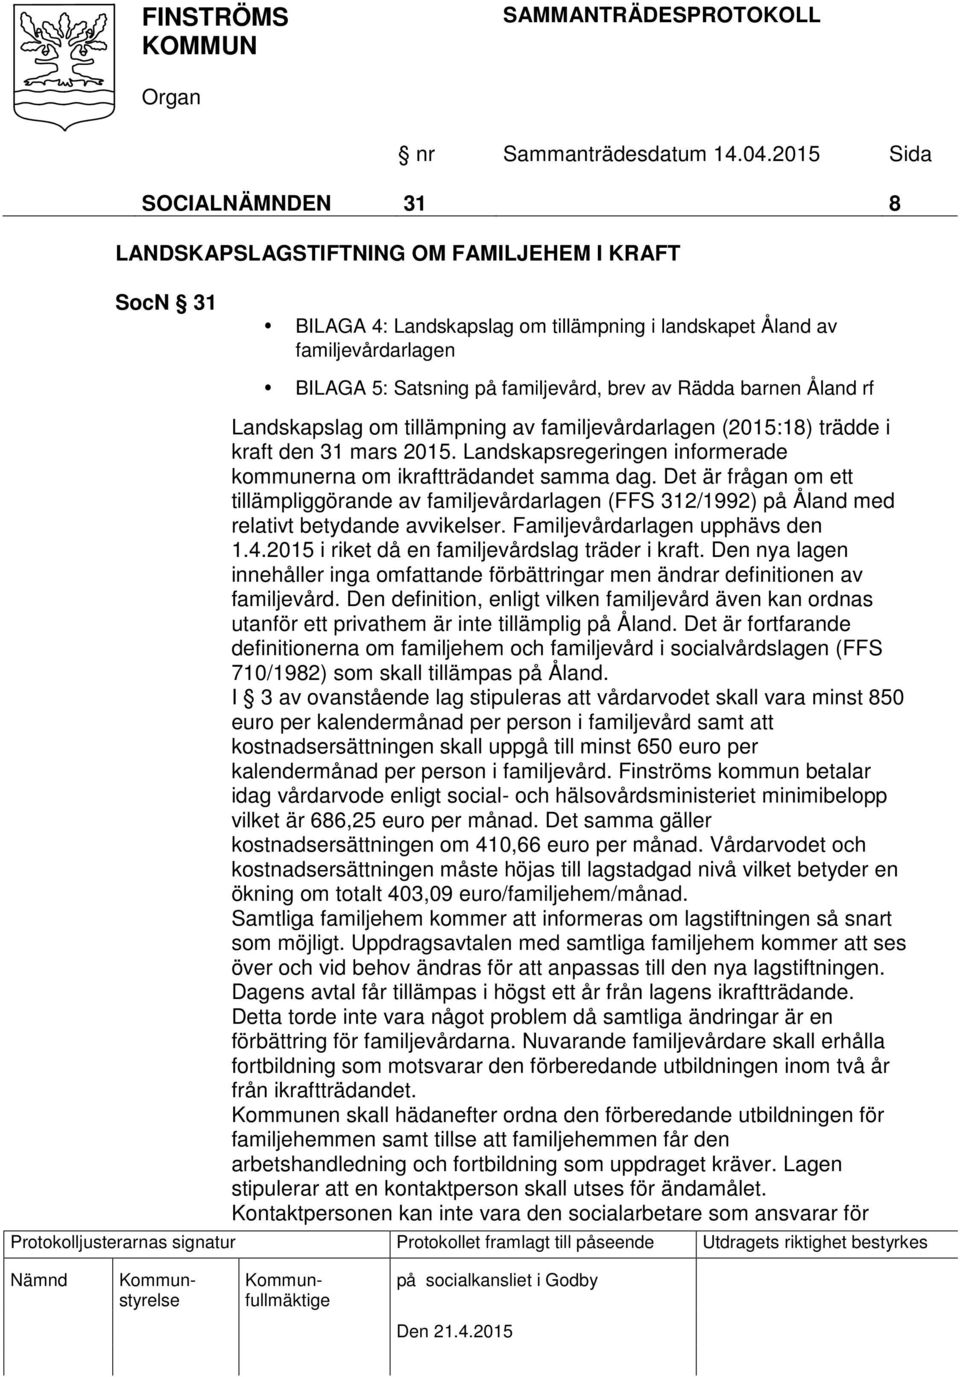 Det är frågan om ett tillämpliggörande av familjevårdarlagen (FFS 312/1992) på Åland med relativt betydande avvikelser. Familjevårdarlagen upphävs den 1.4.